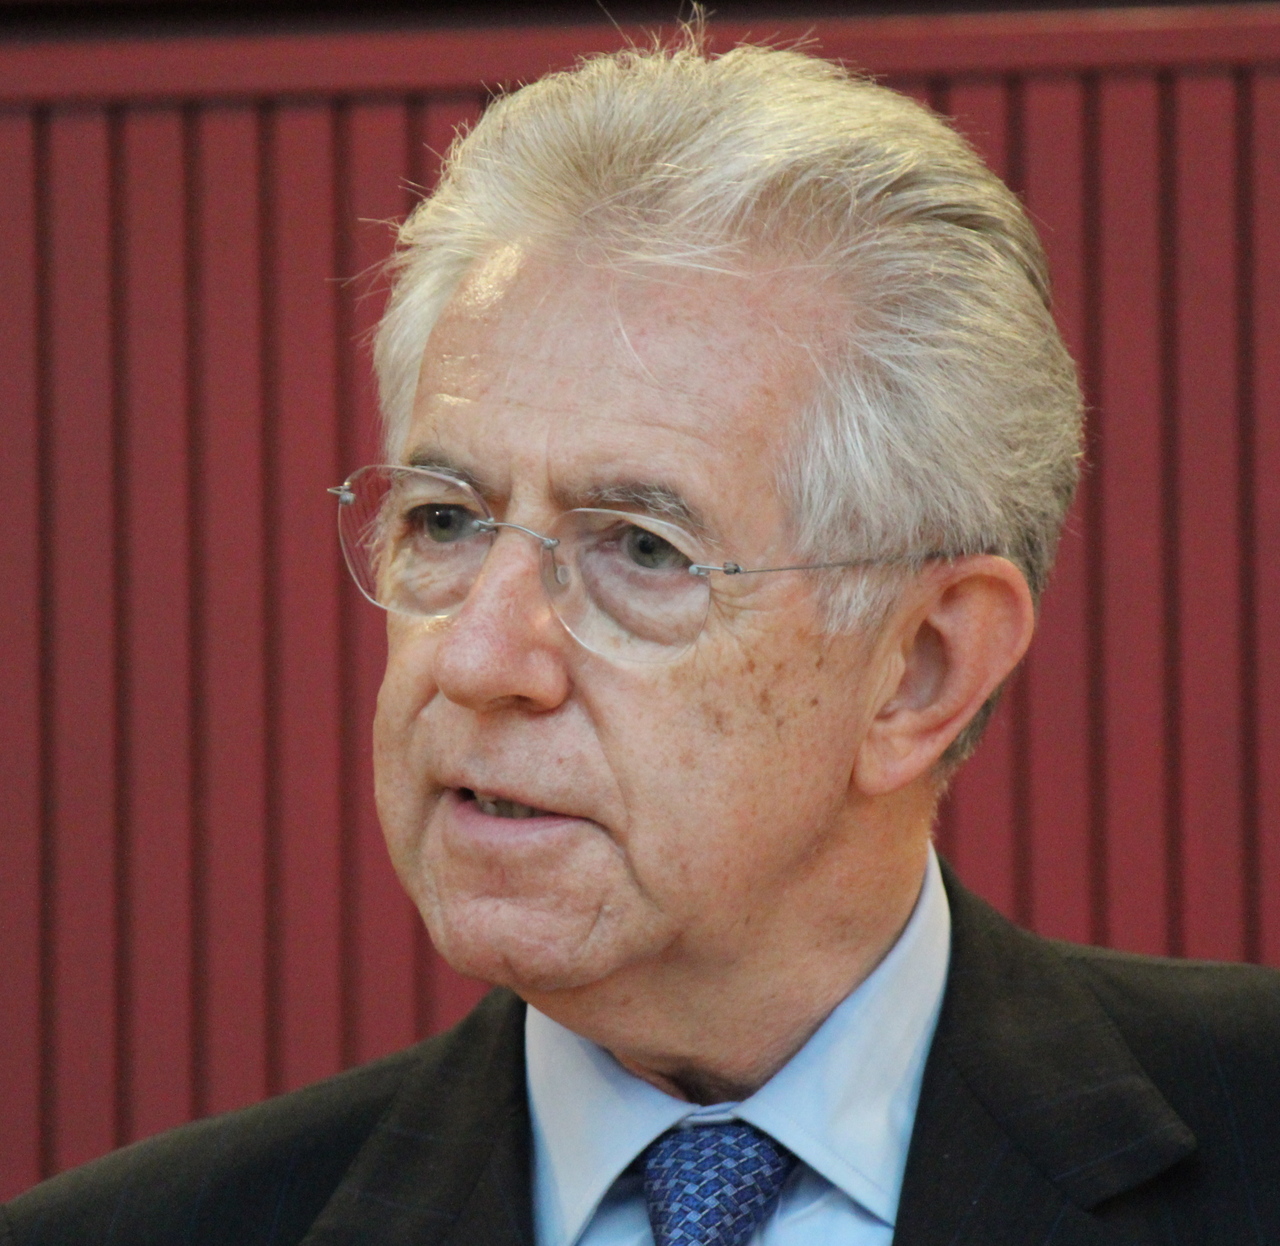 Mario Monti ha contratto il Covid: “L’ho avuto, un anno fa sarei morto”